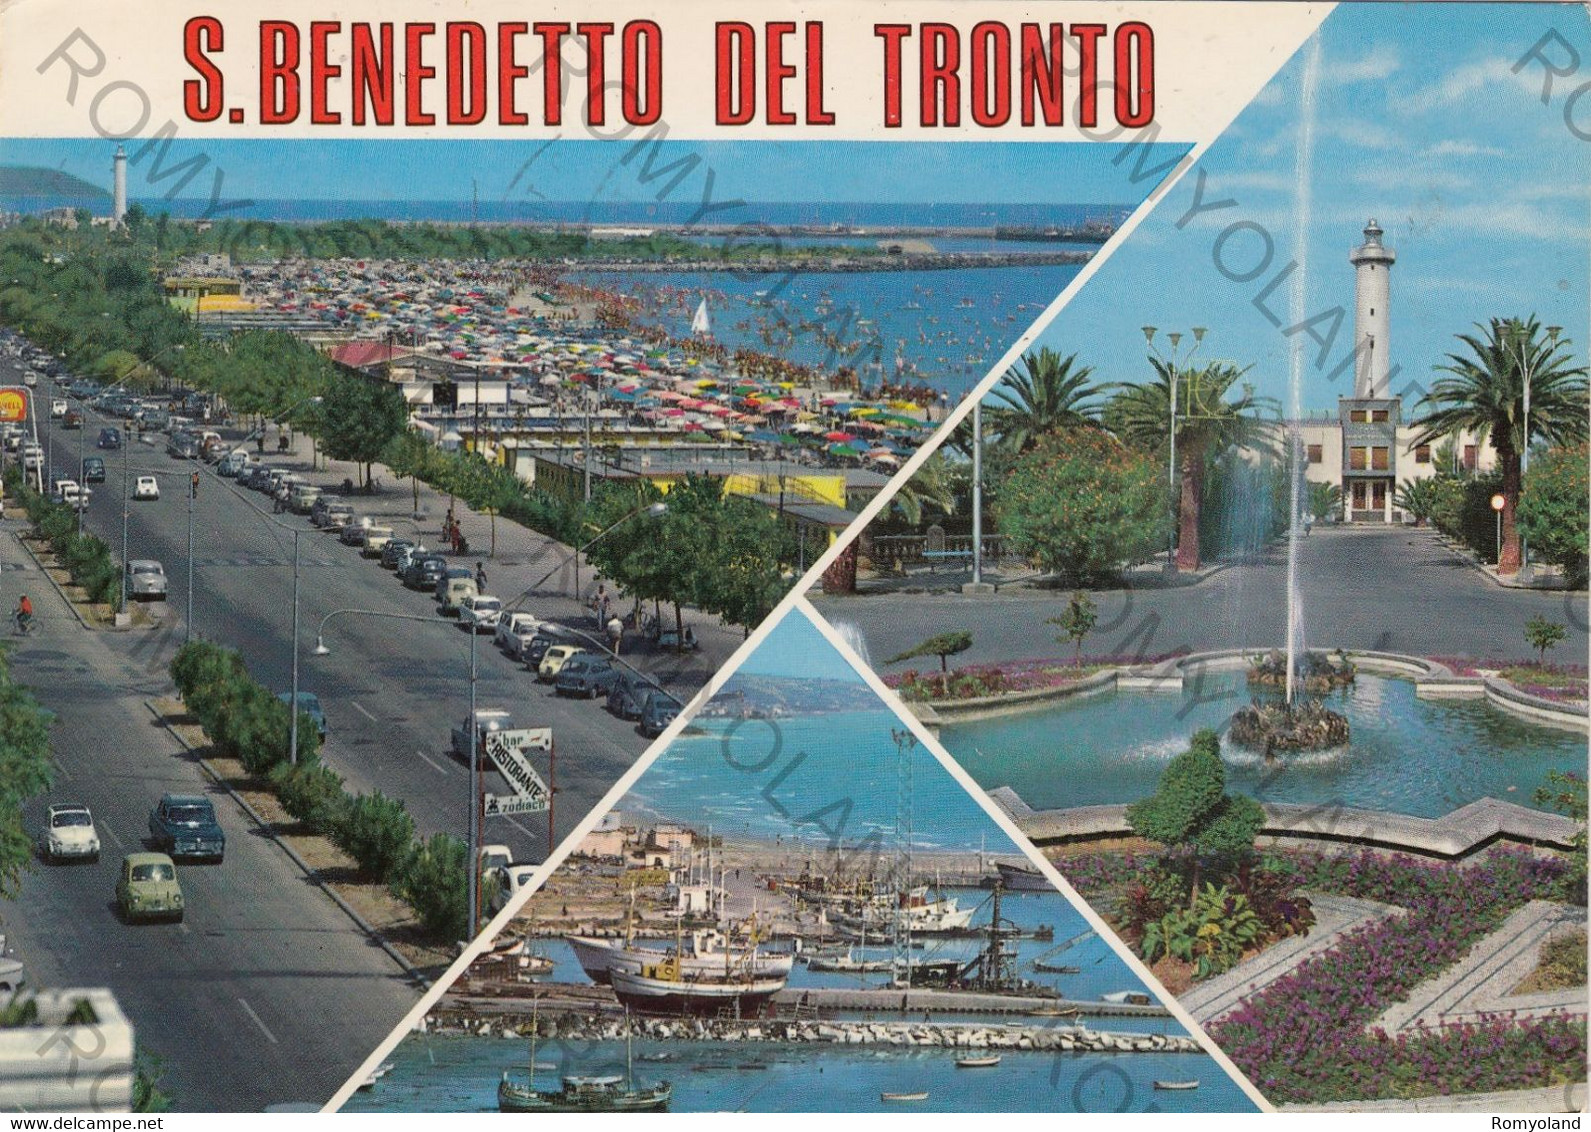 CARTOLINA  S.BENEDETTO DEL TRONTO,ASCOLI PICENO,MARCHE,MARE,SOLE,STORIA,CULTURA,MEMORIA,RELIGIONE,VIAGGIATA 1980 - Ascoli Piceno